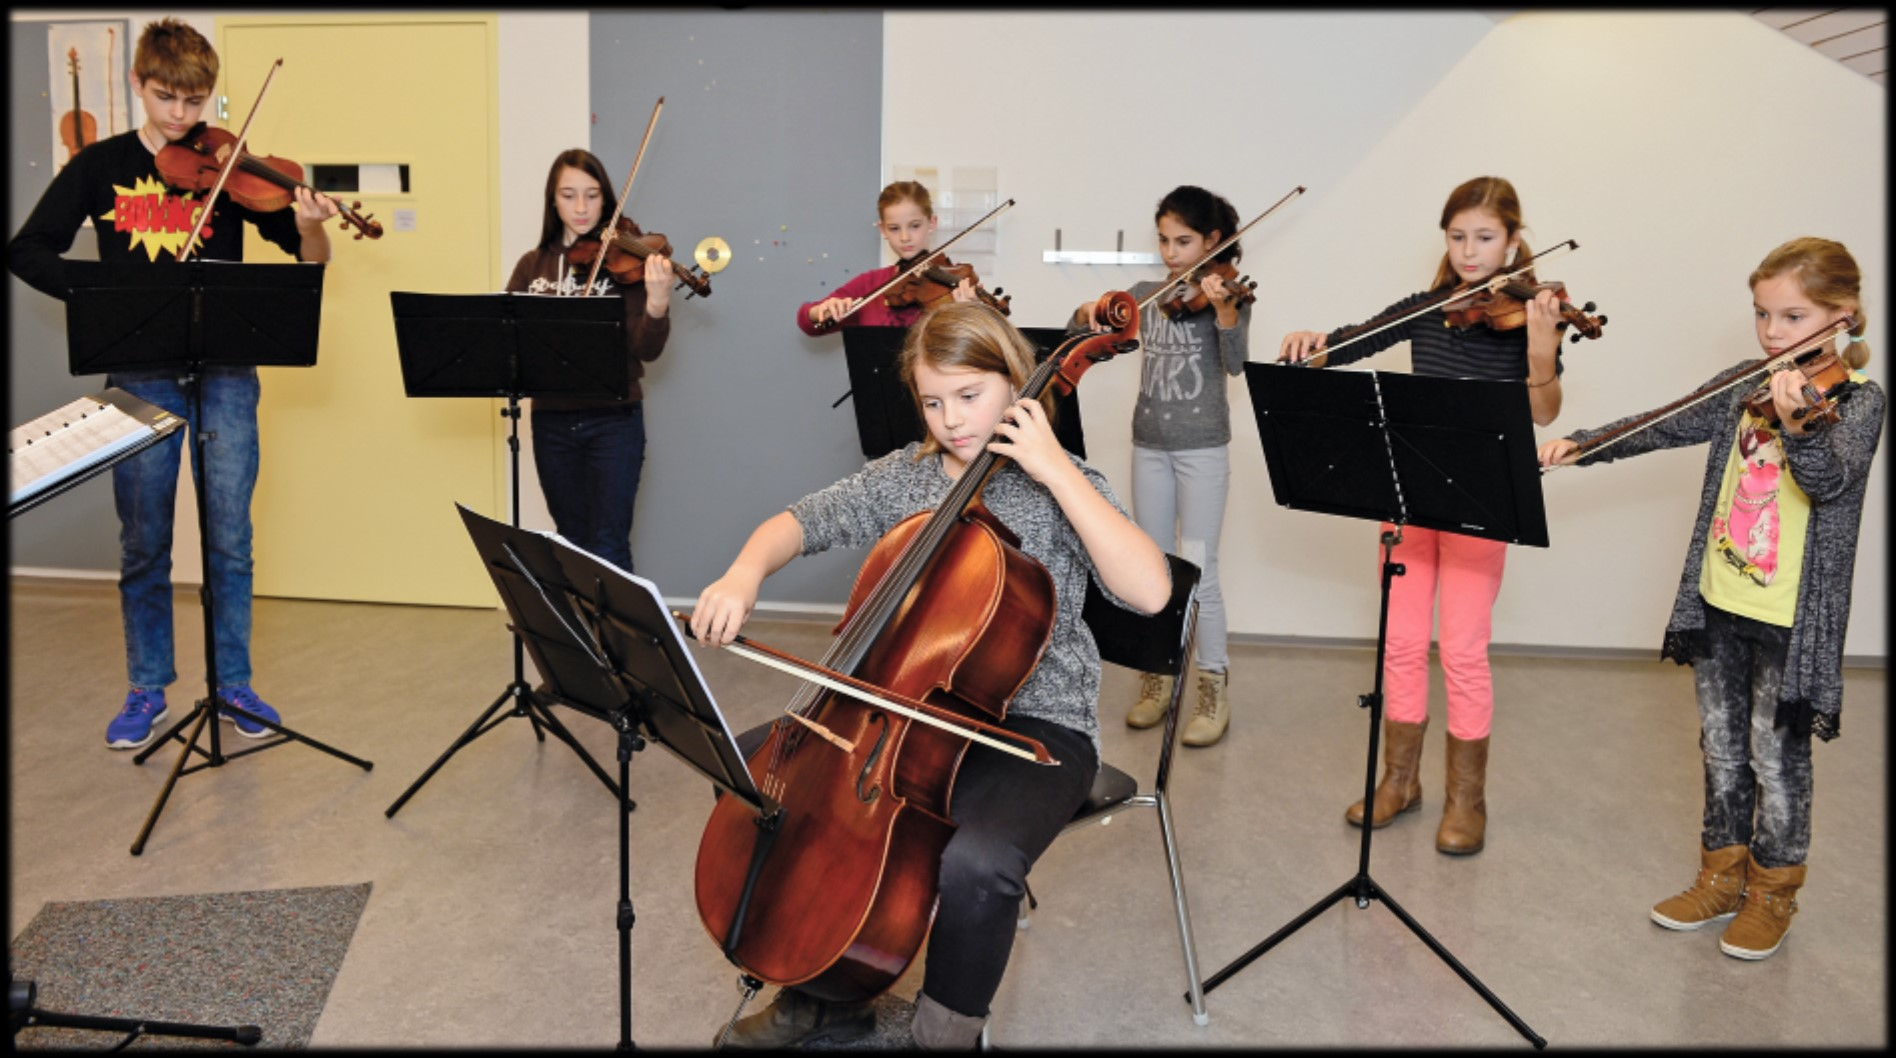 Ensemble-Unterricht Für Kinder und Jugendliche gibt es keine bessere Motivation, als zusammen mit Gleichgesinnten zu musizieren und auf ein gemeinsames Ziel (z.b. einen Konzertauftritt) hinzuarbeiten!